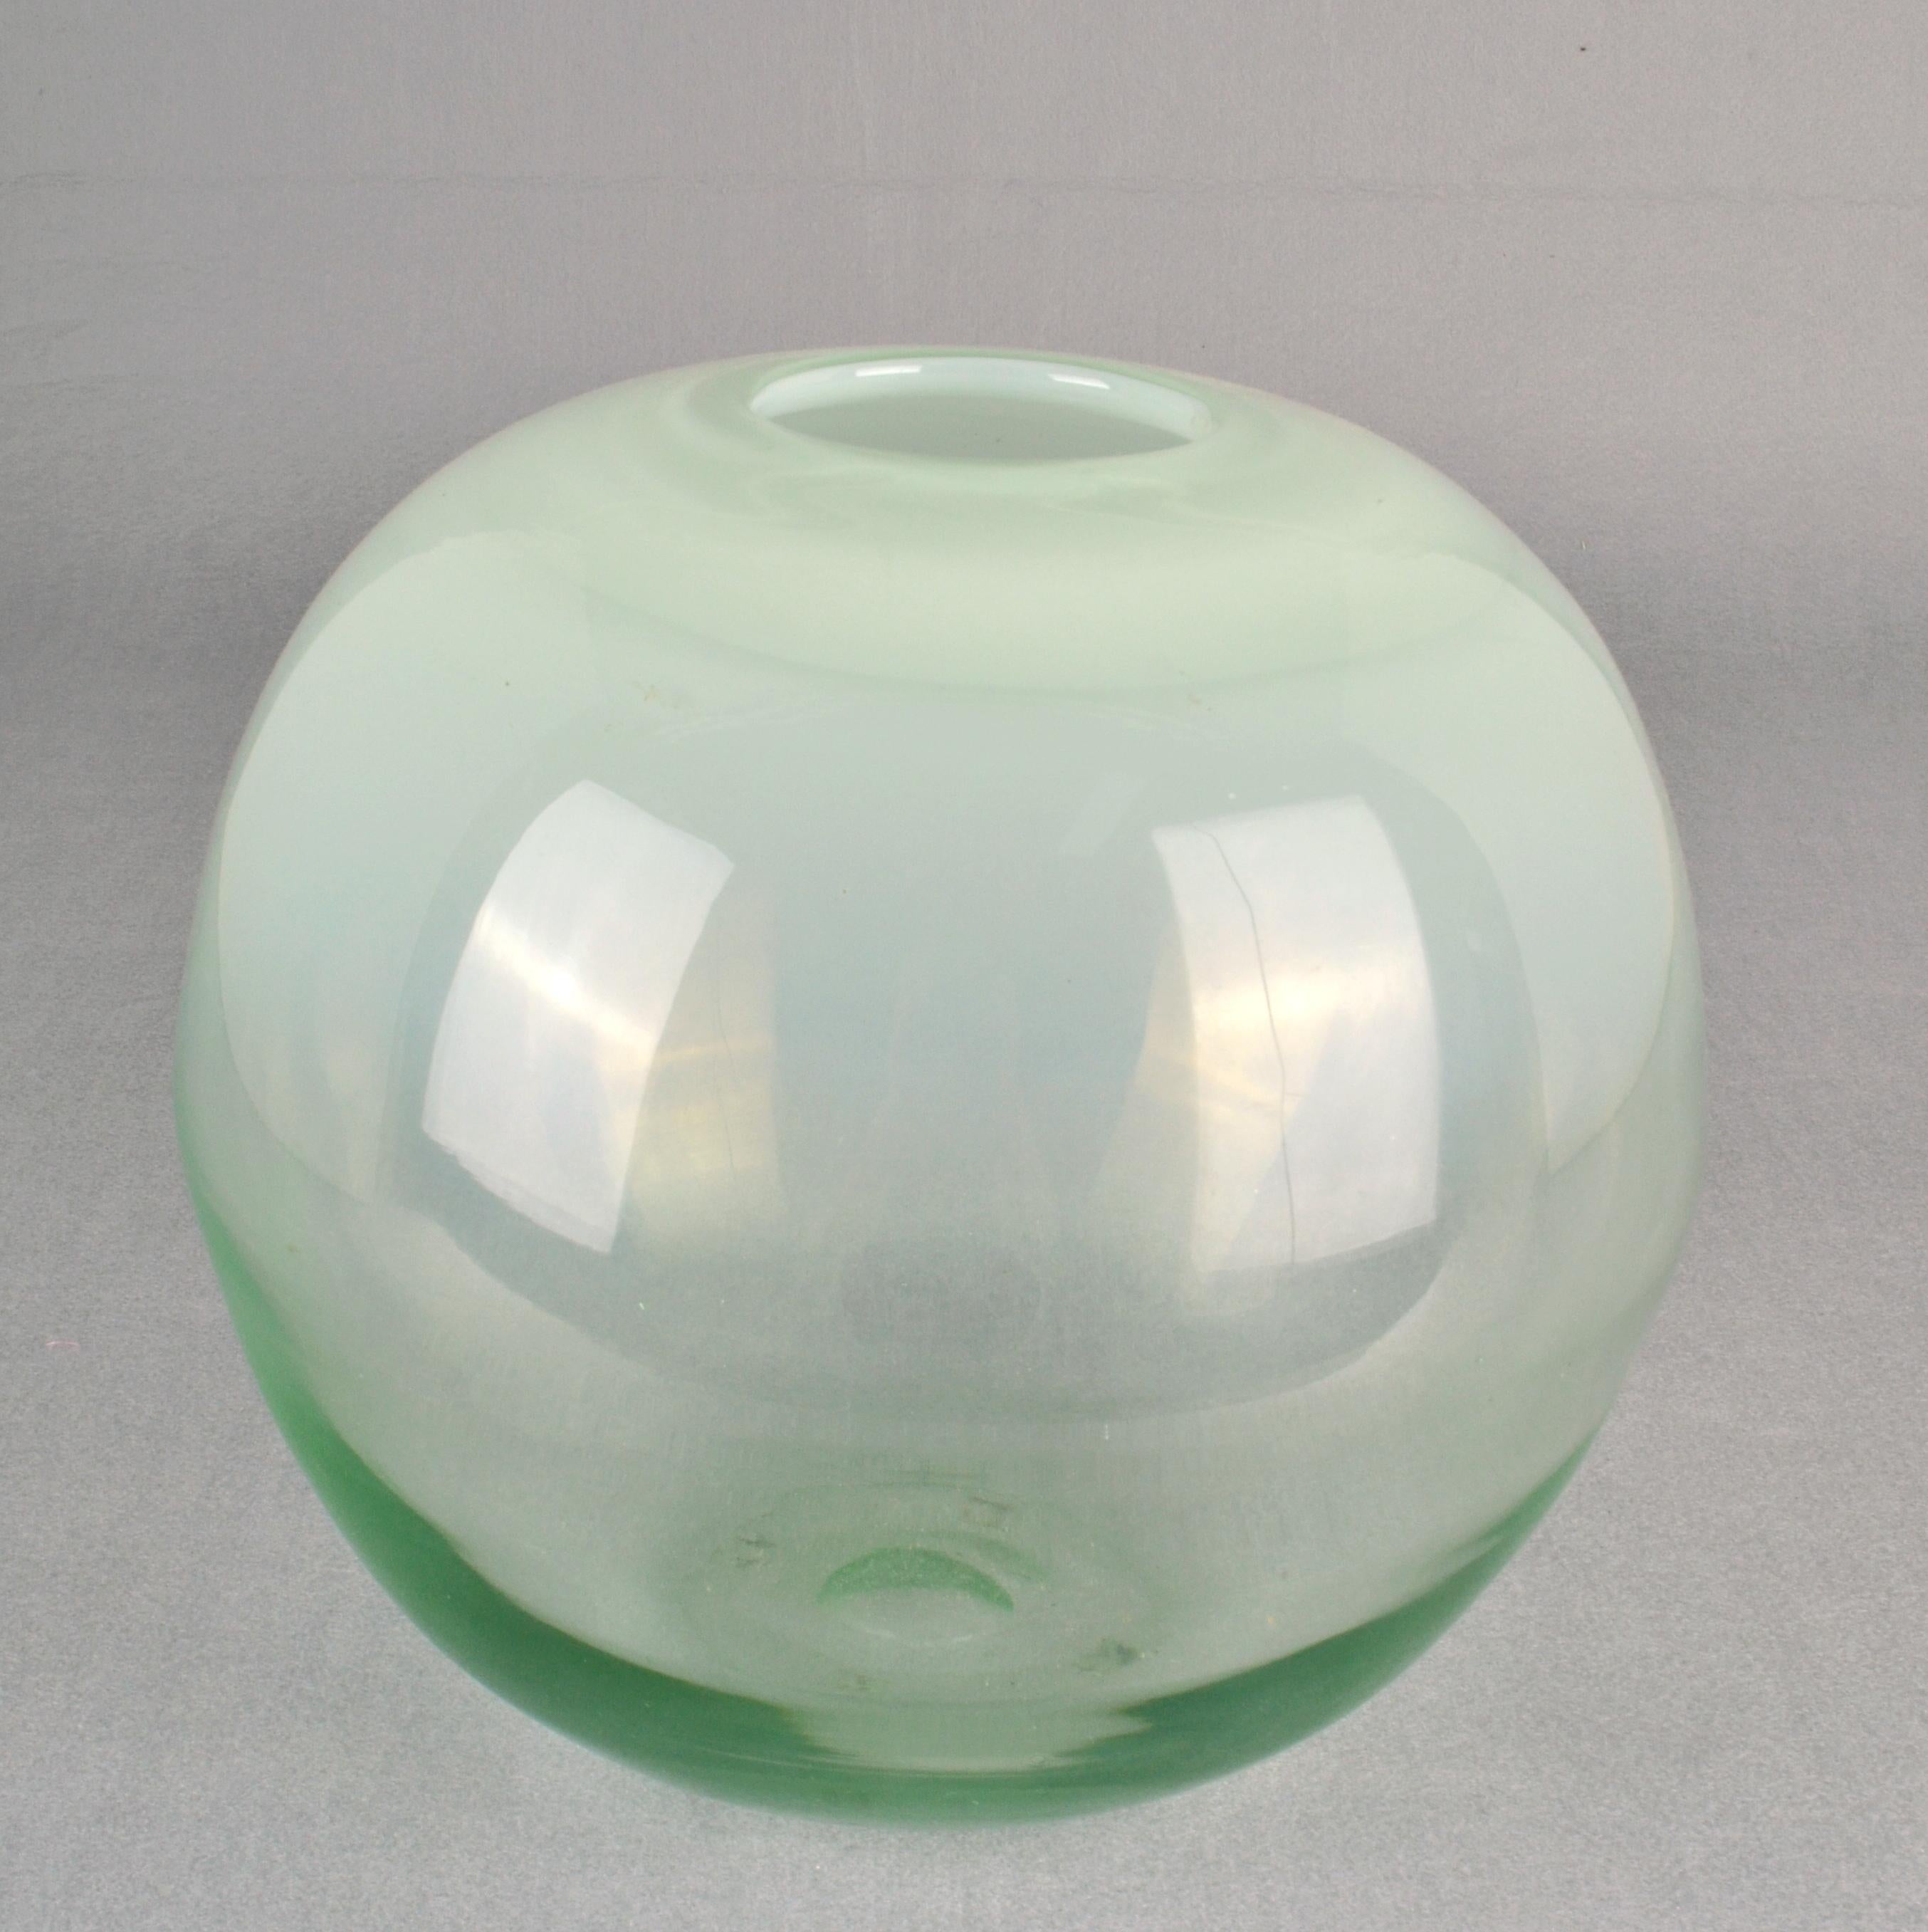 Vase boule en verre transparent soufflé à la bouche, opalin en haut et vert en bas, par Copier, à la verrerie de Leerdam, Pays-Bas, dans les années 1960. 
Verrier et designer  Artistics Dirk Copier (1901-1991) est considéré comme le plus important